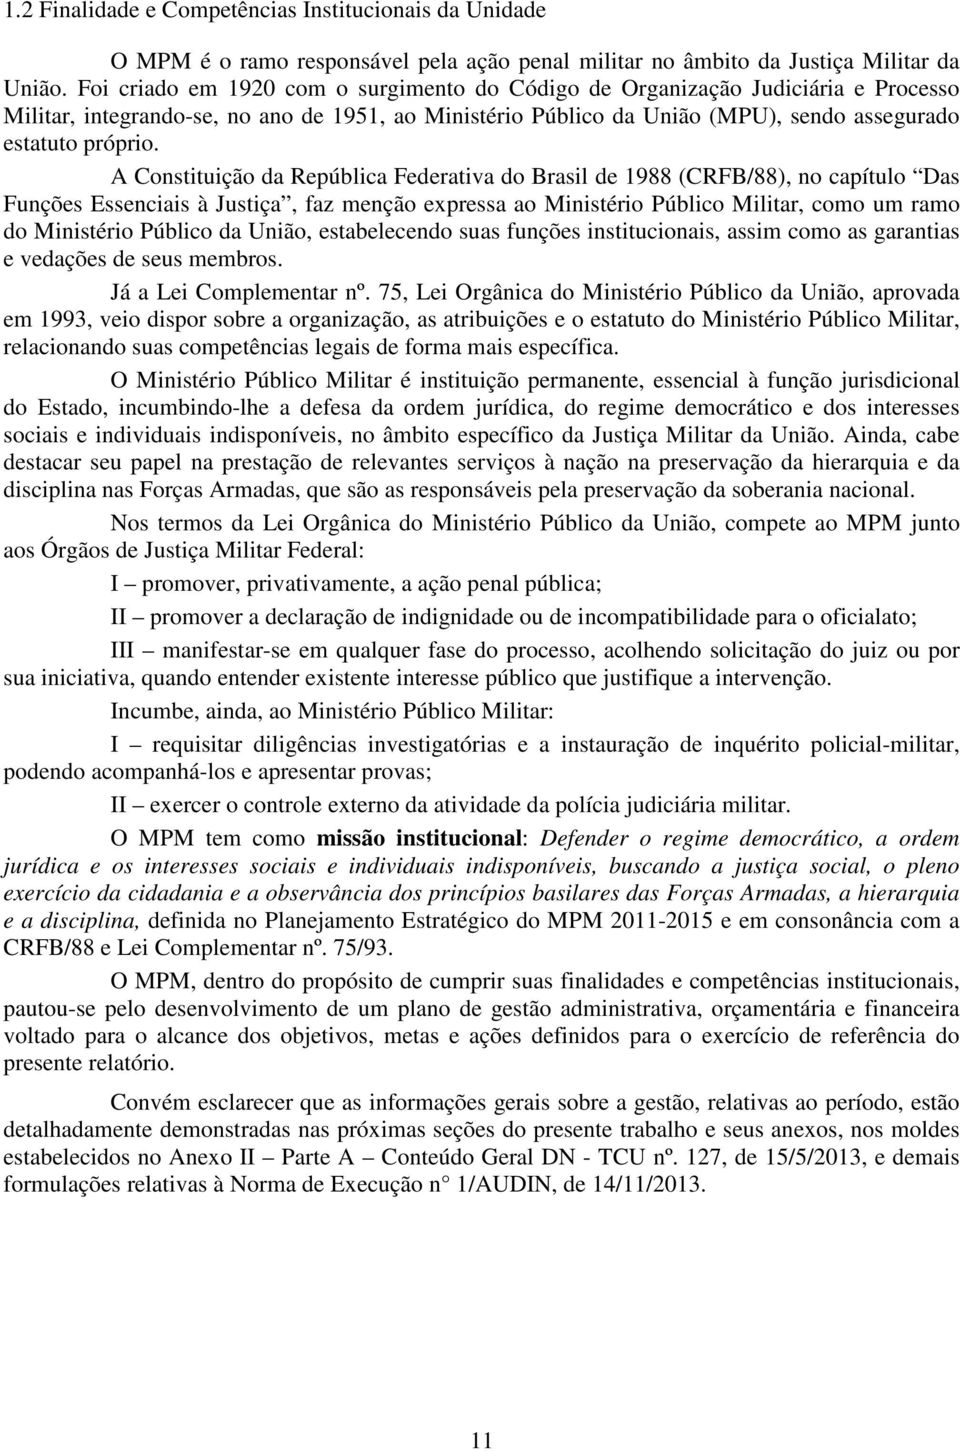 A Constituição da República Federativa do Brasil de 1988 (CRFB/88), no capítulo Das Funções Essenciais à Justiça, faz menção expressa ao Ministério Público Militar, como um ramo do Ministério Público